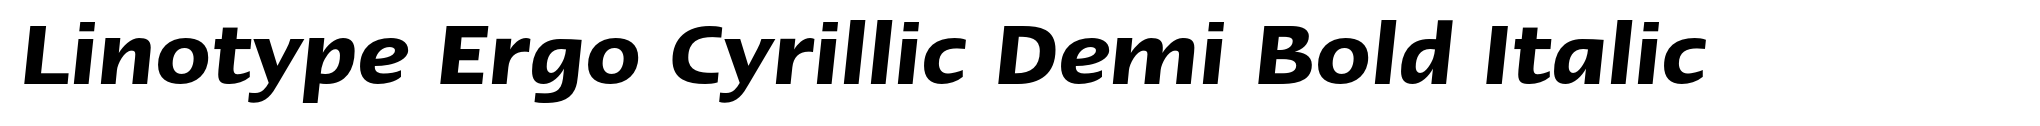 Linotype Ergo Cyrillic Demi Bold Italic image